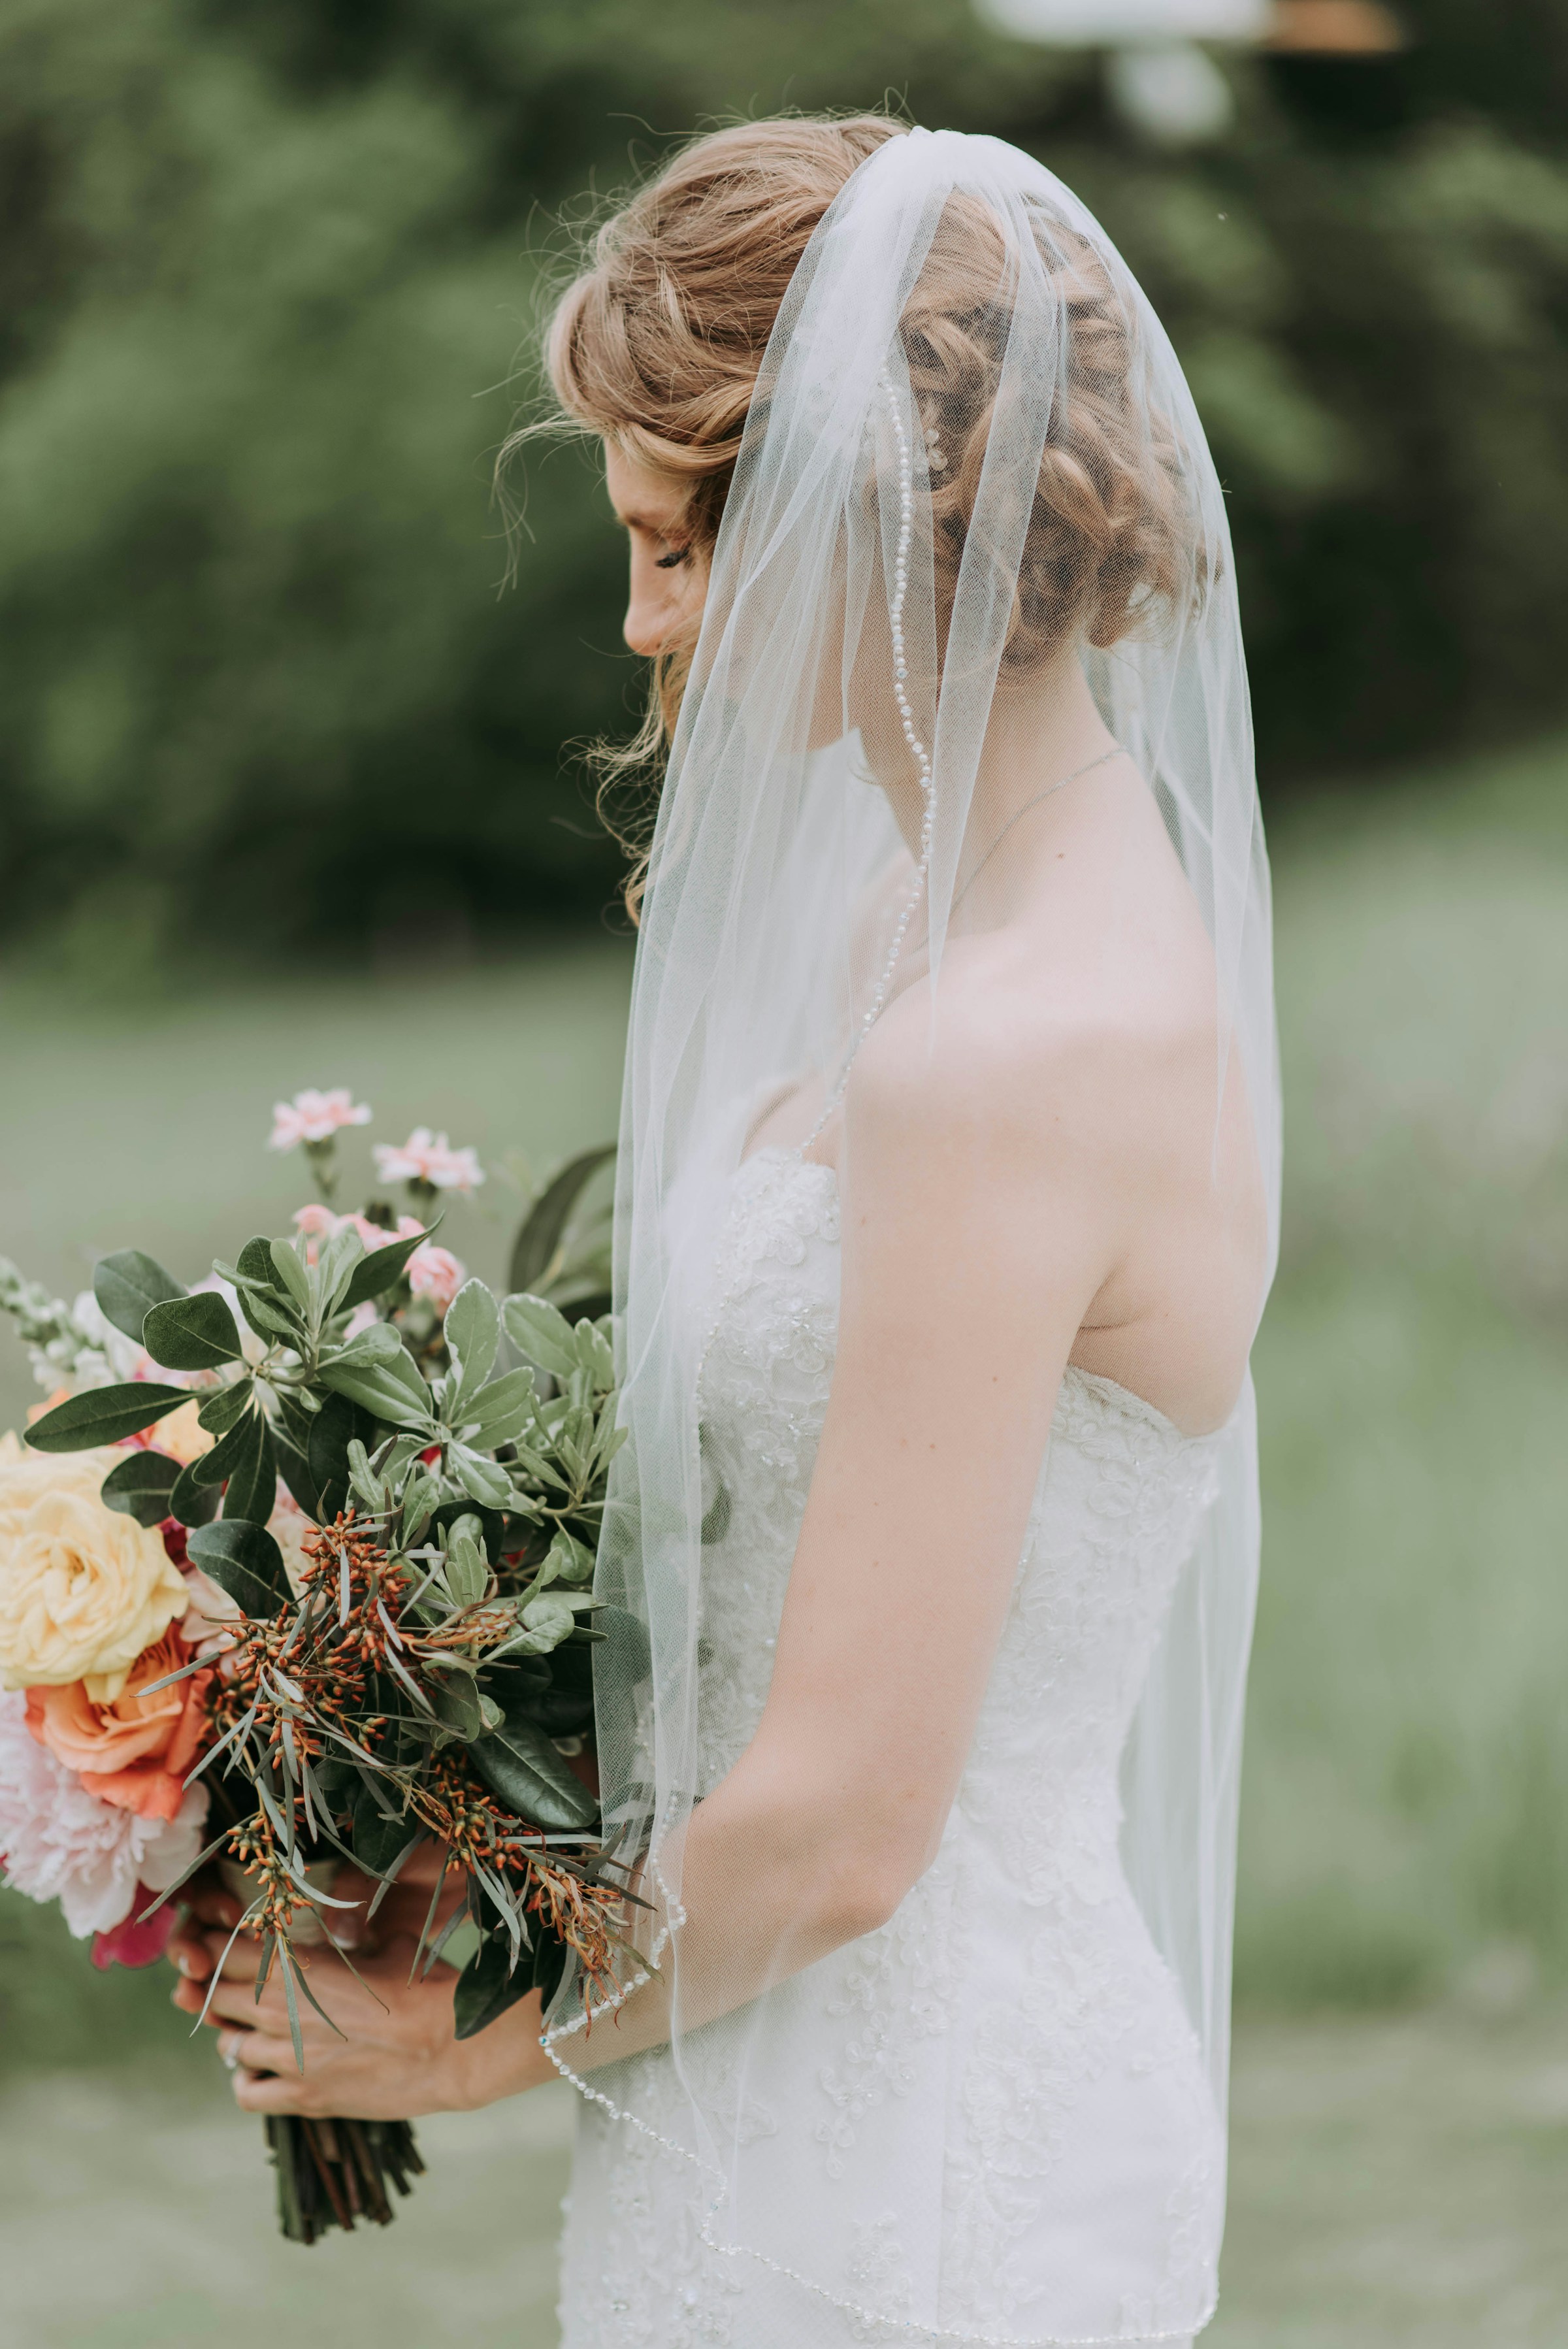 Une mariée tenant un bouquet | Source : Unsplash